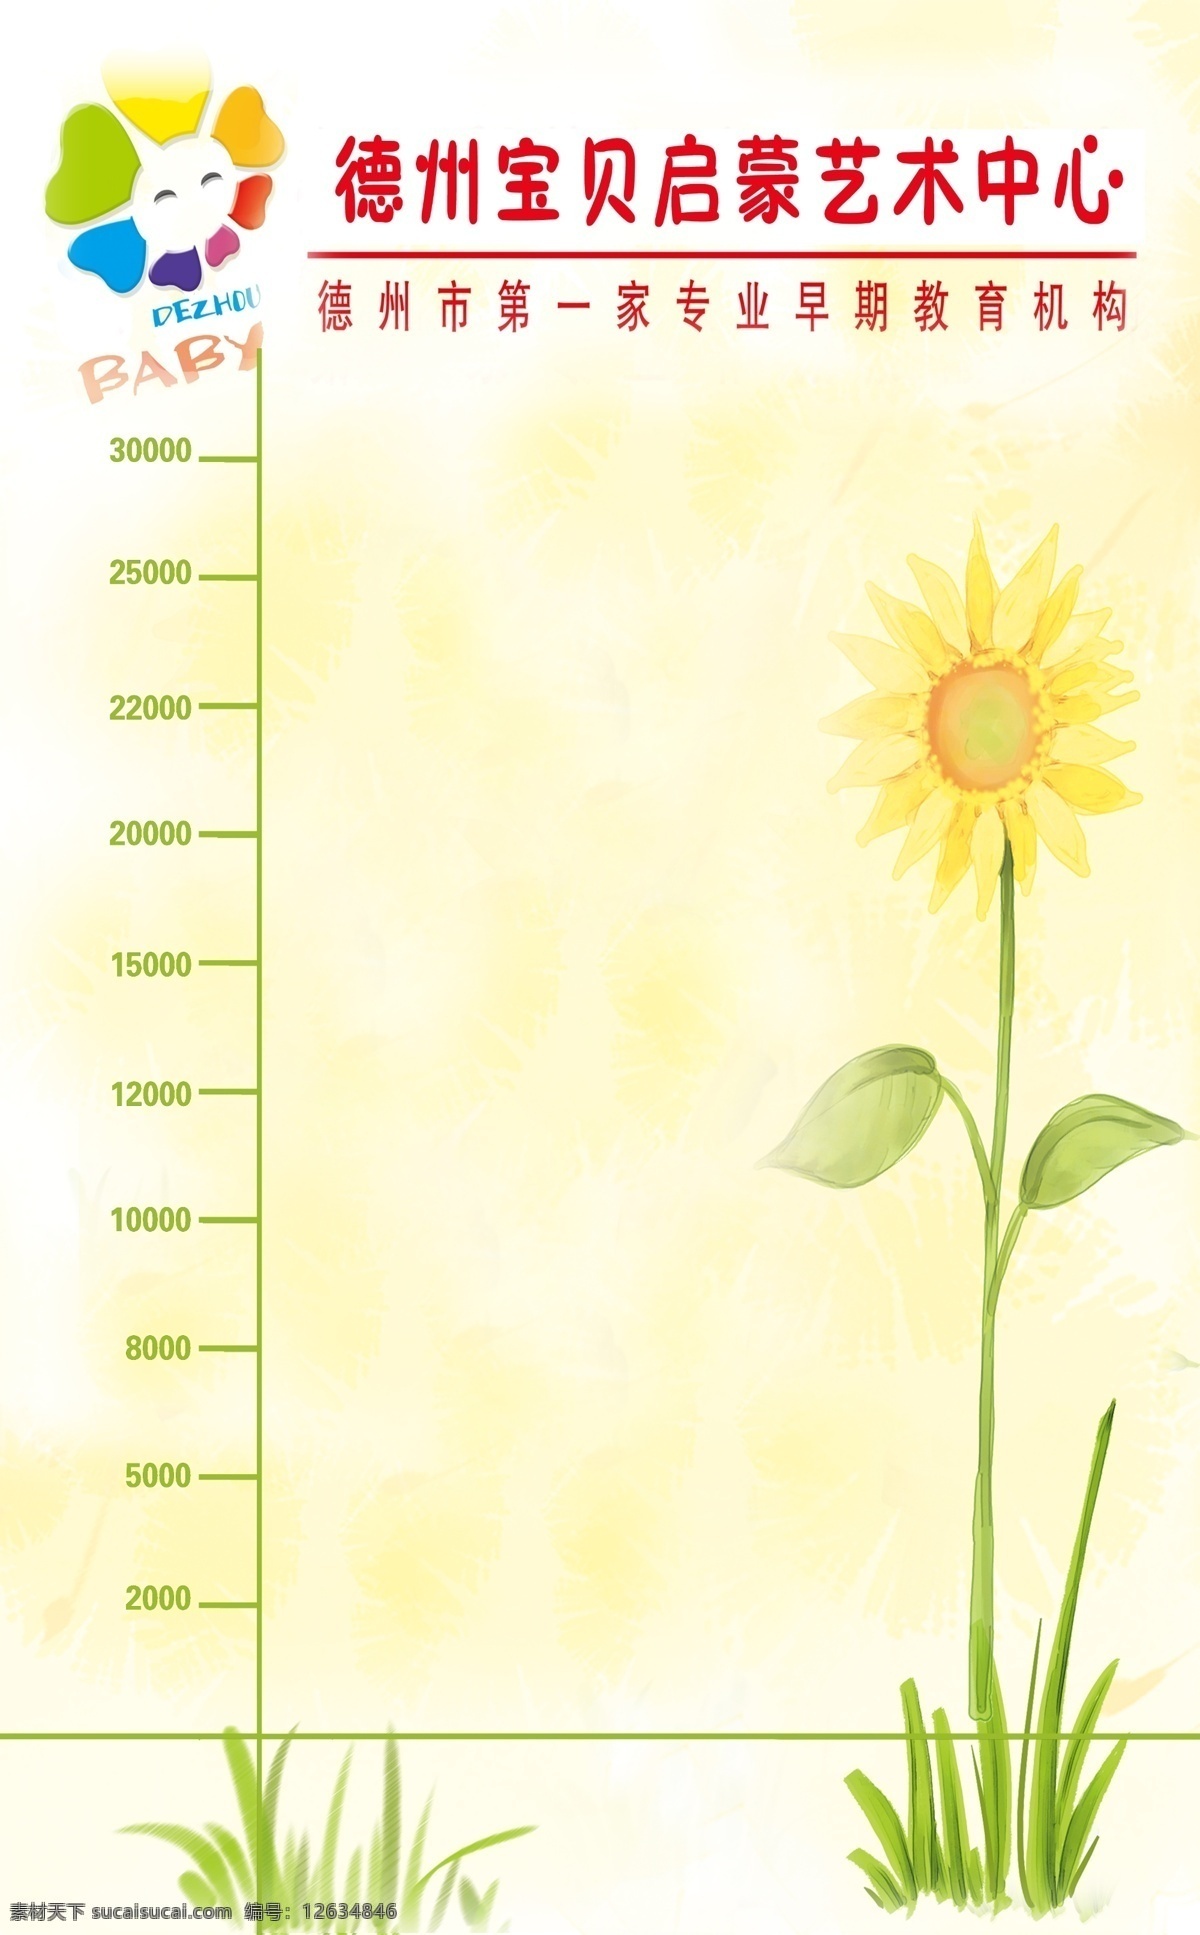 身高 测量 标尺 图 身高测量标尺 身高标尺展板 卡通向日葵 淡黄色背景 卡通太阳标志 分层